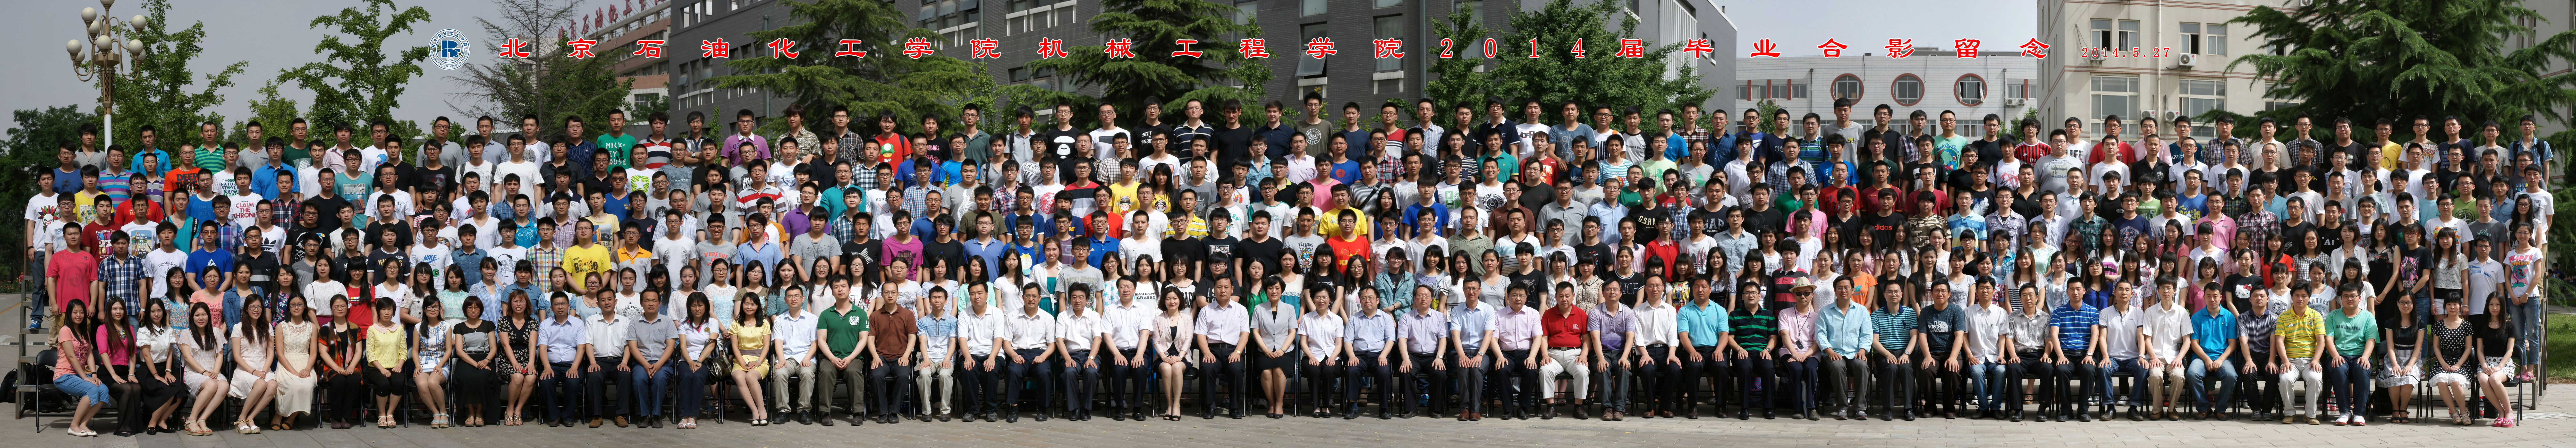 北京石油化工学院机械工程学院2014届毕业生合影-1.jpg